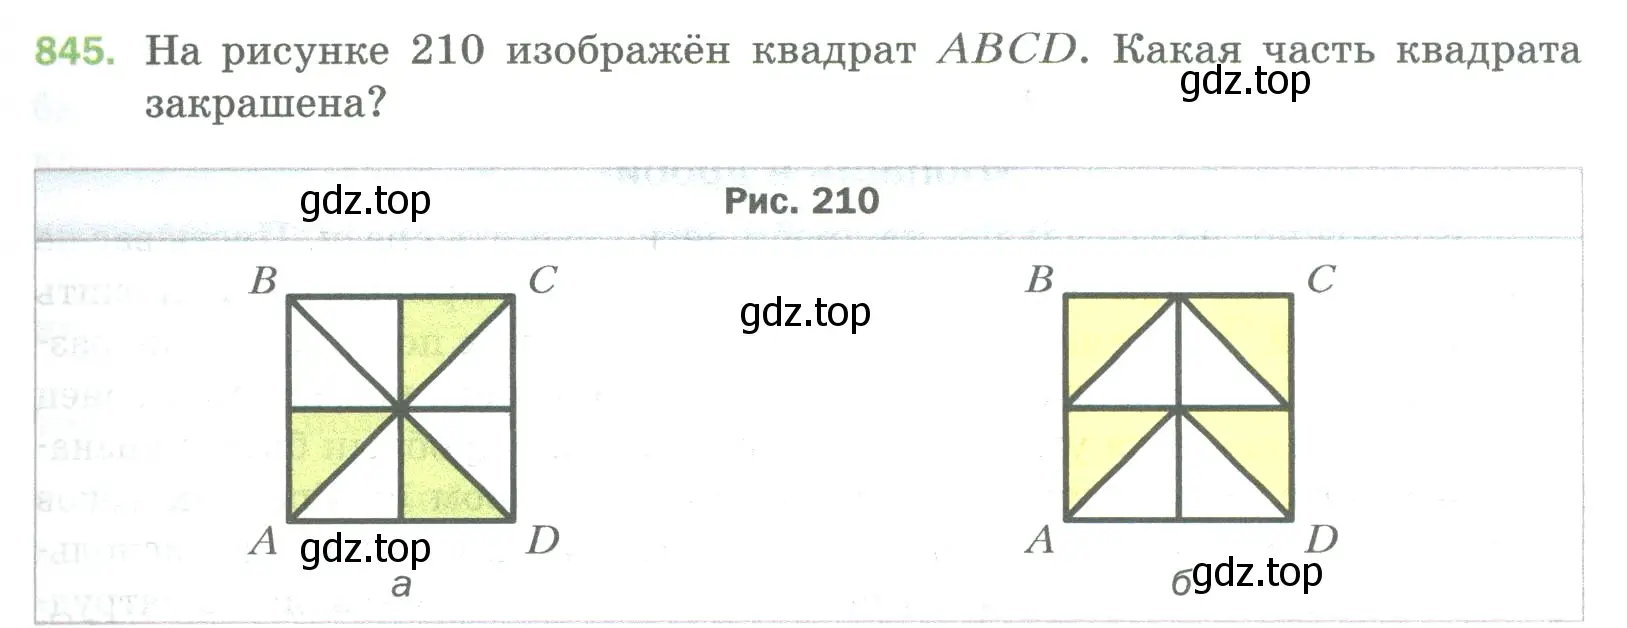 Условие номер 845 (страница 191) гдз по математике 5 класс Мерзляк, Полонский, учебник